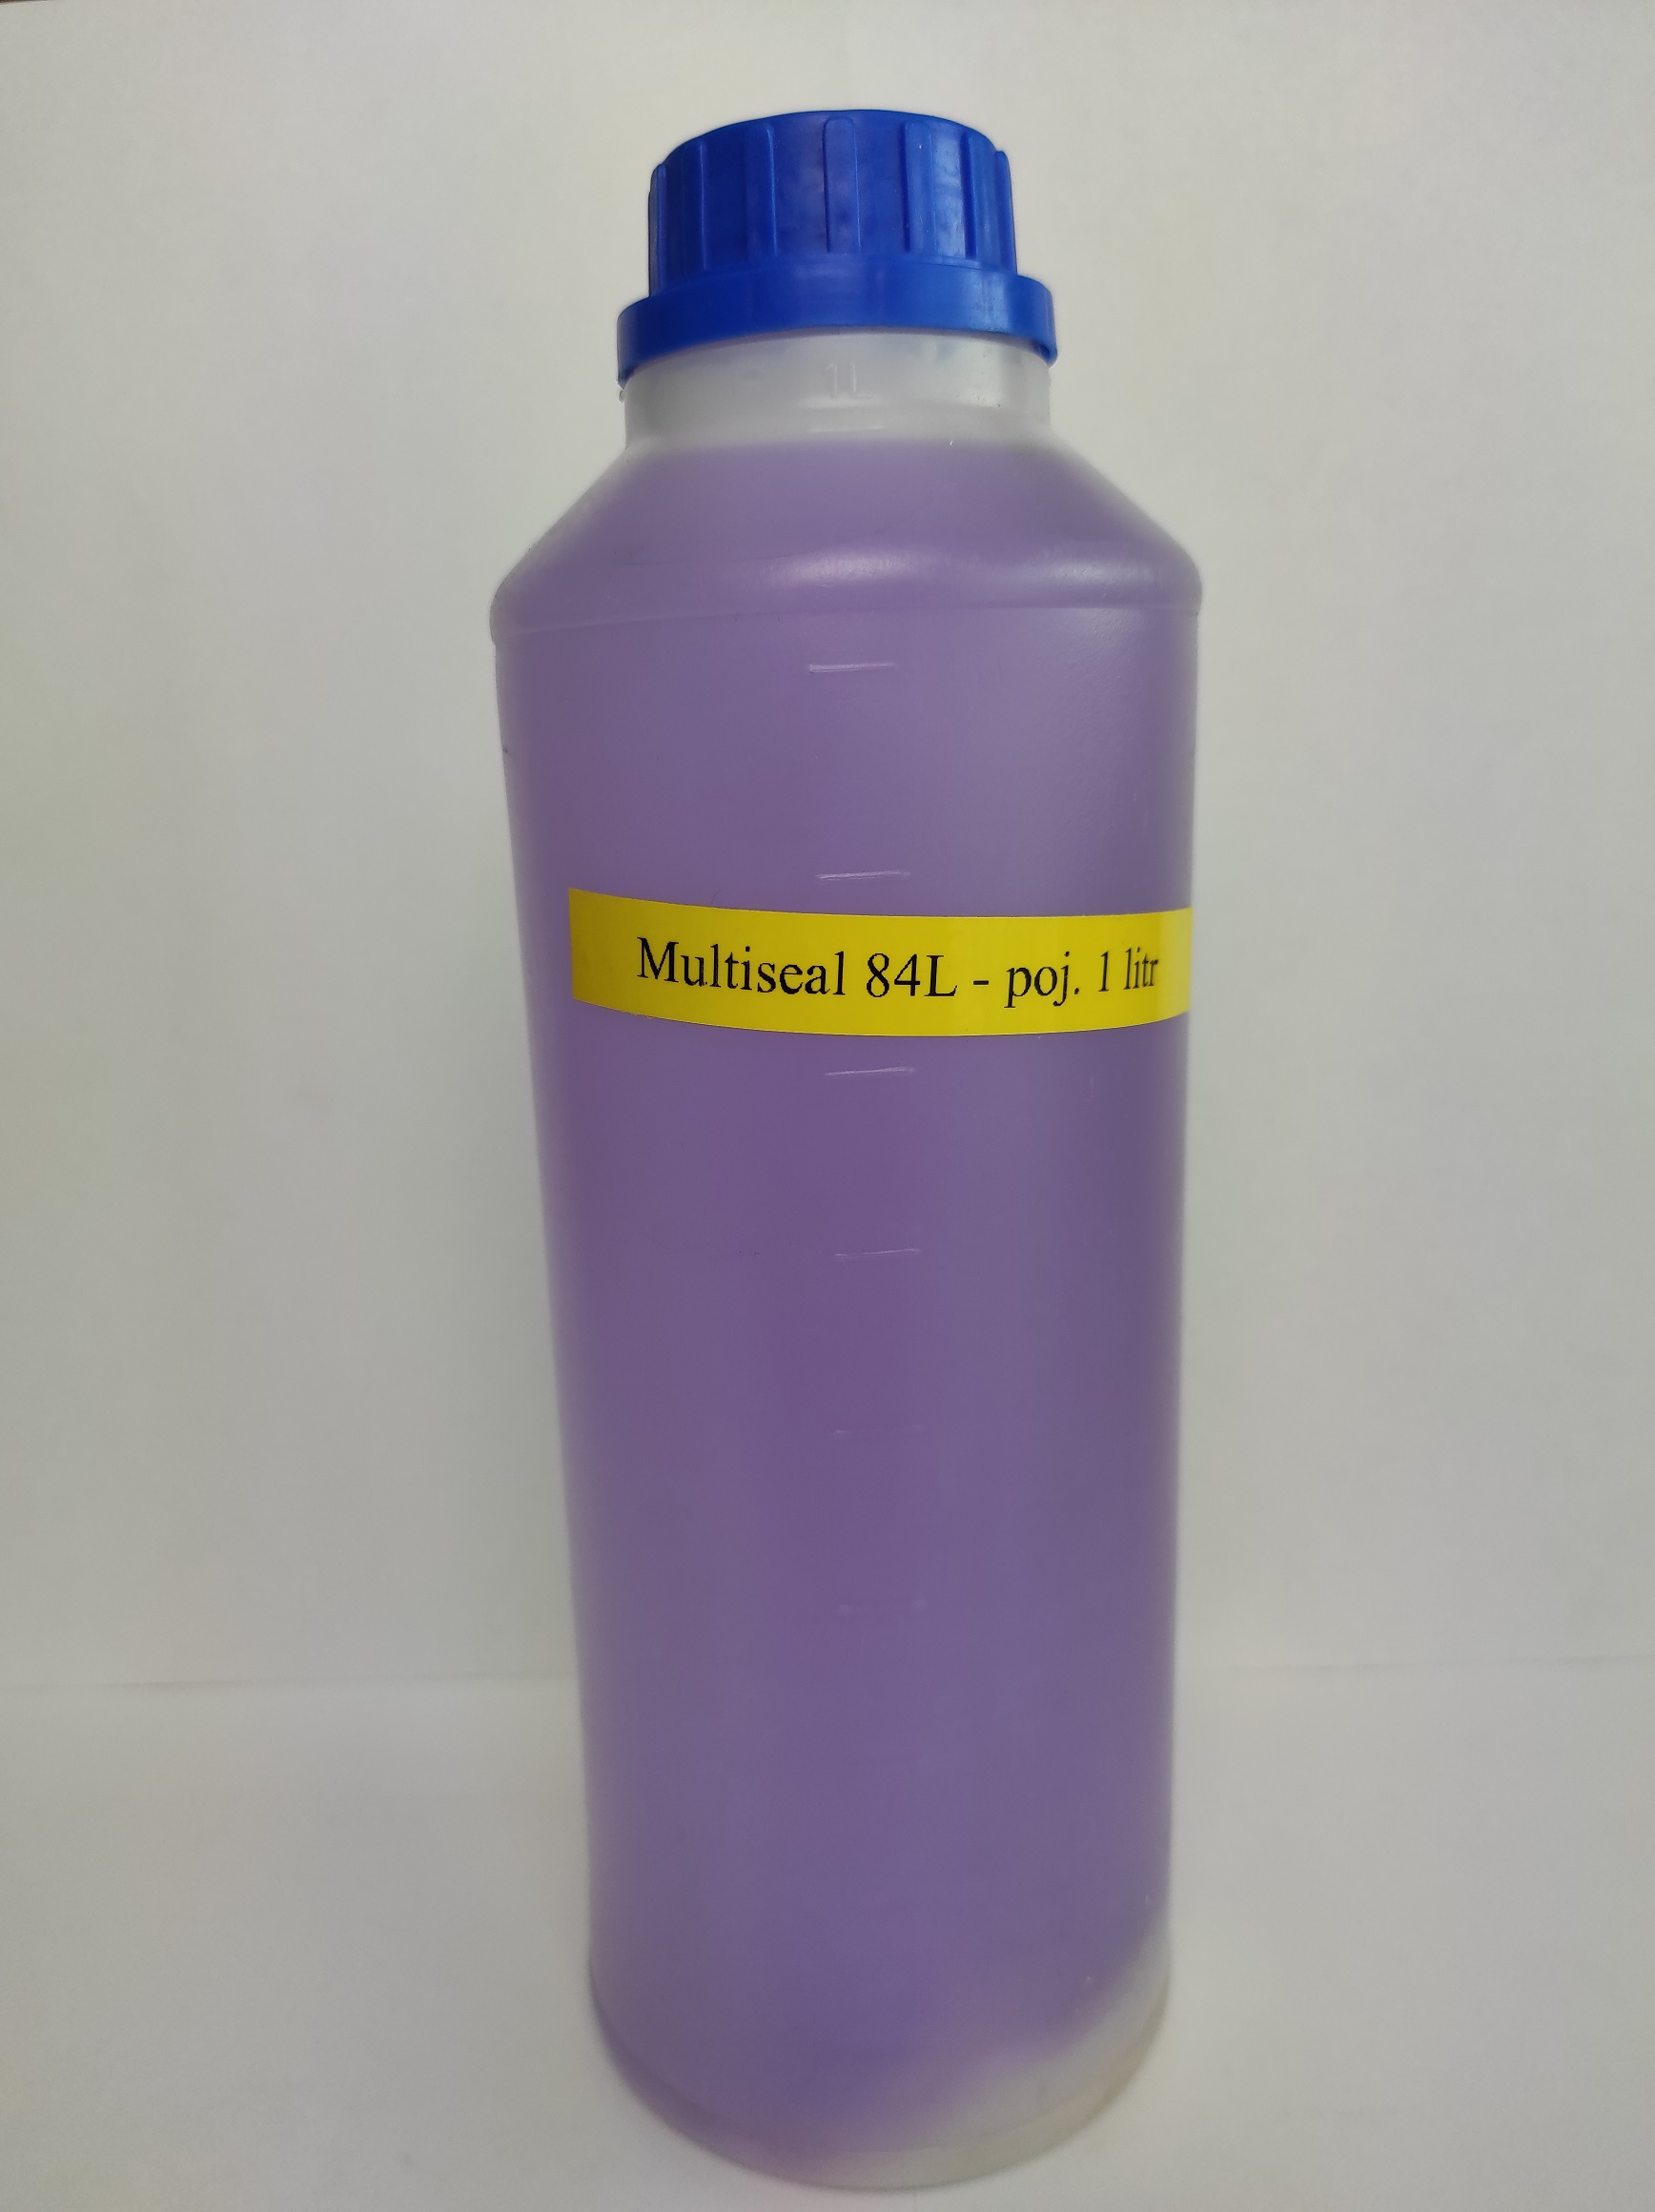 Multiseal 84L - wyciek wody nie większy niż 5 litrów na dobę